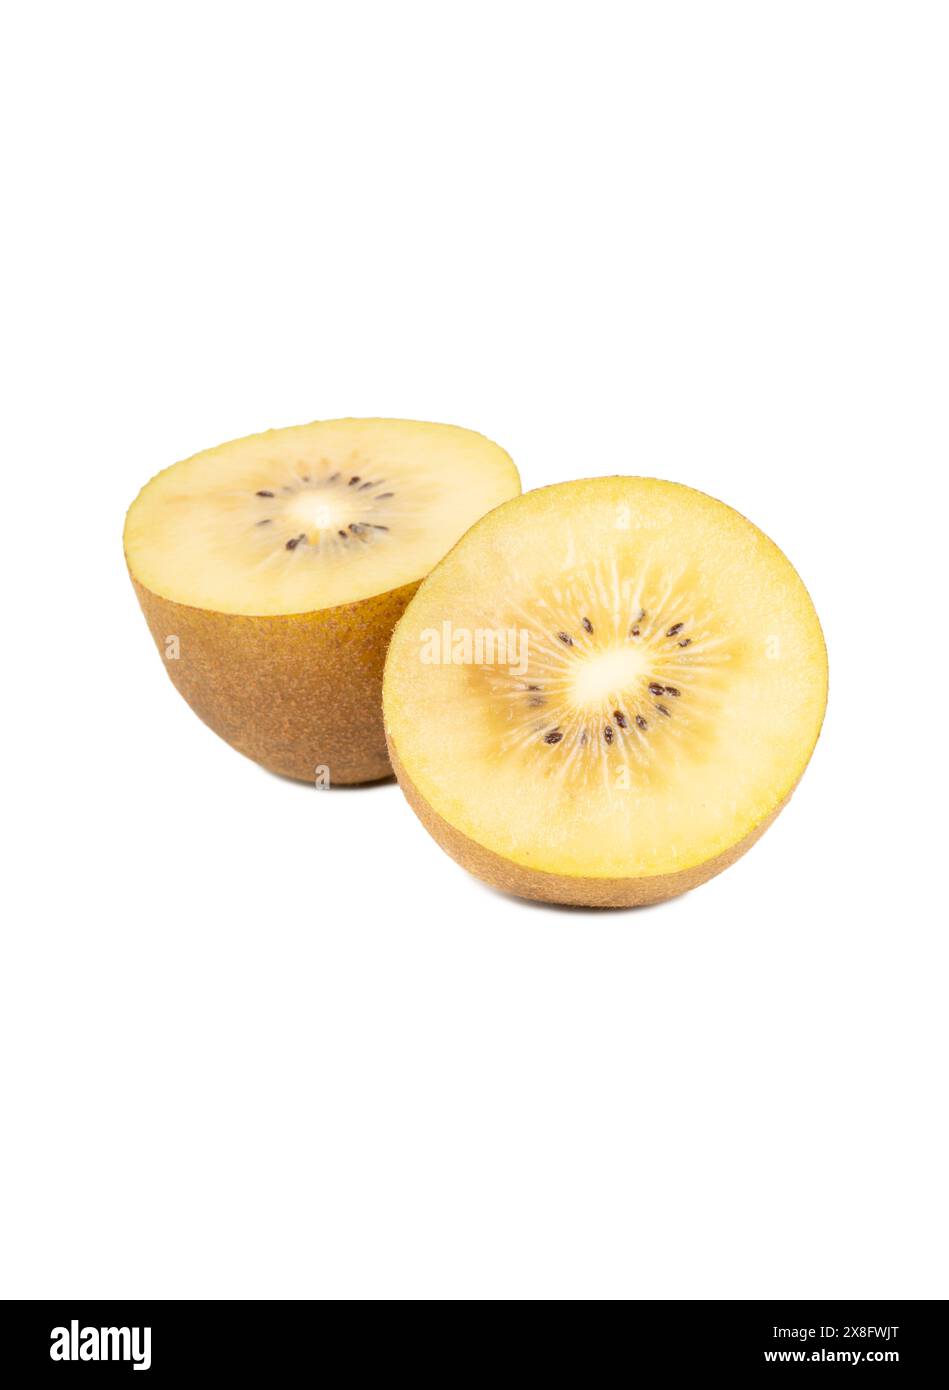 Two juicy halves of gold kiwi fruit isolated on white background Stock Photo